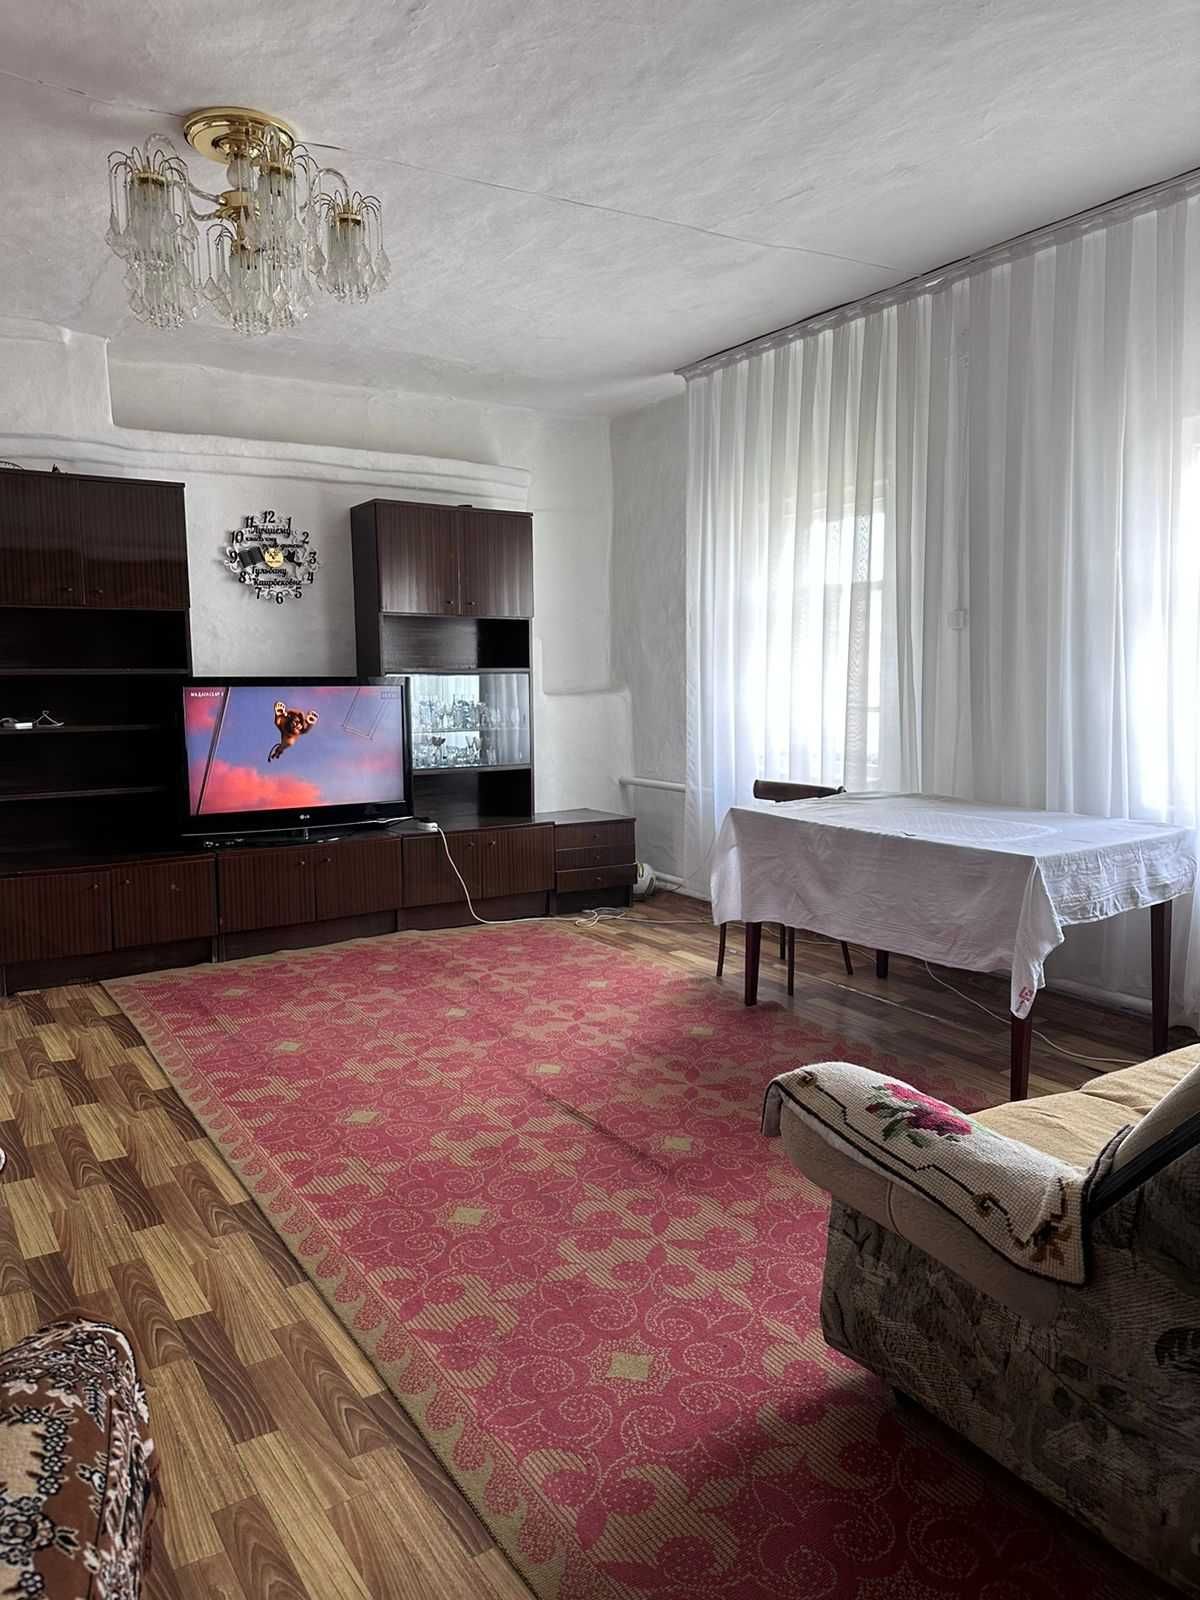 Обменяю большой дом в поселке Ленинском на квартиру в Павлодаре.